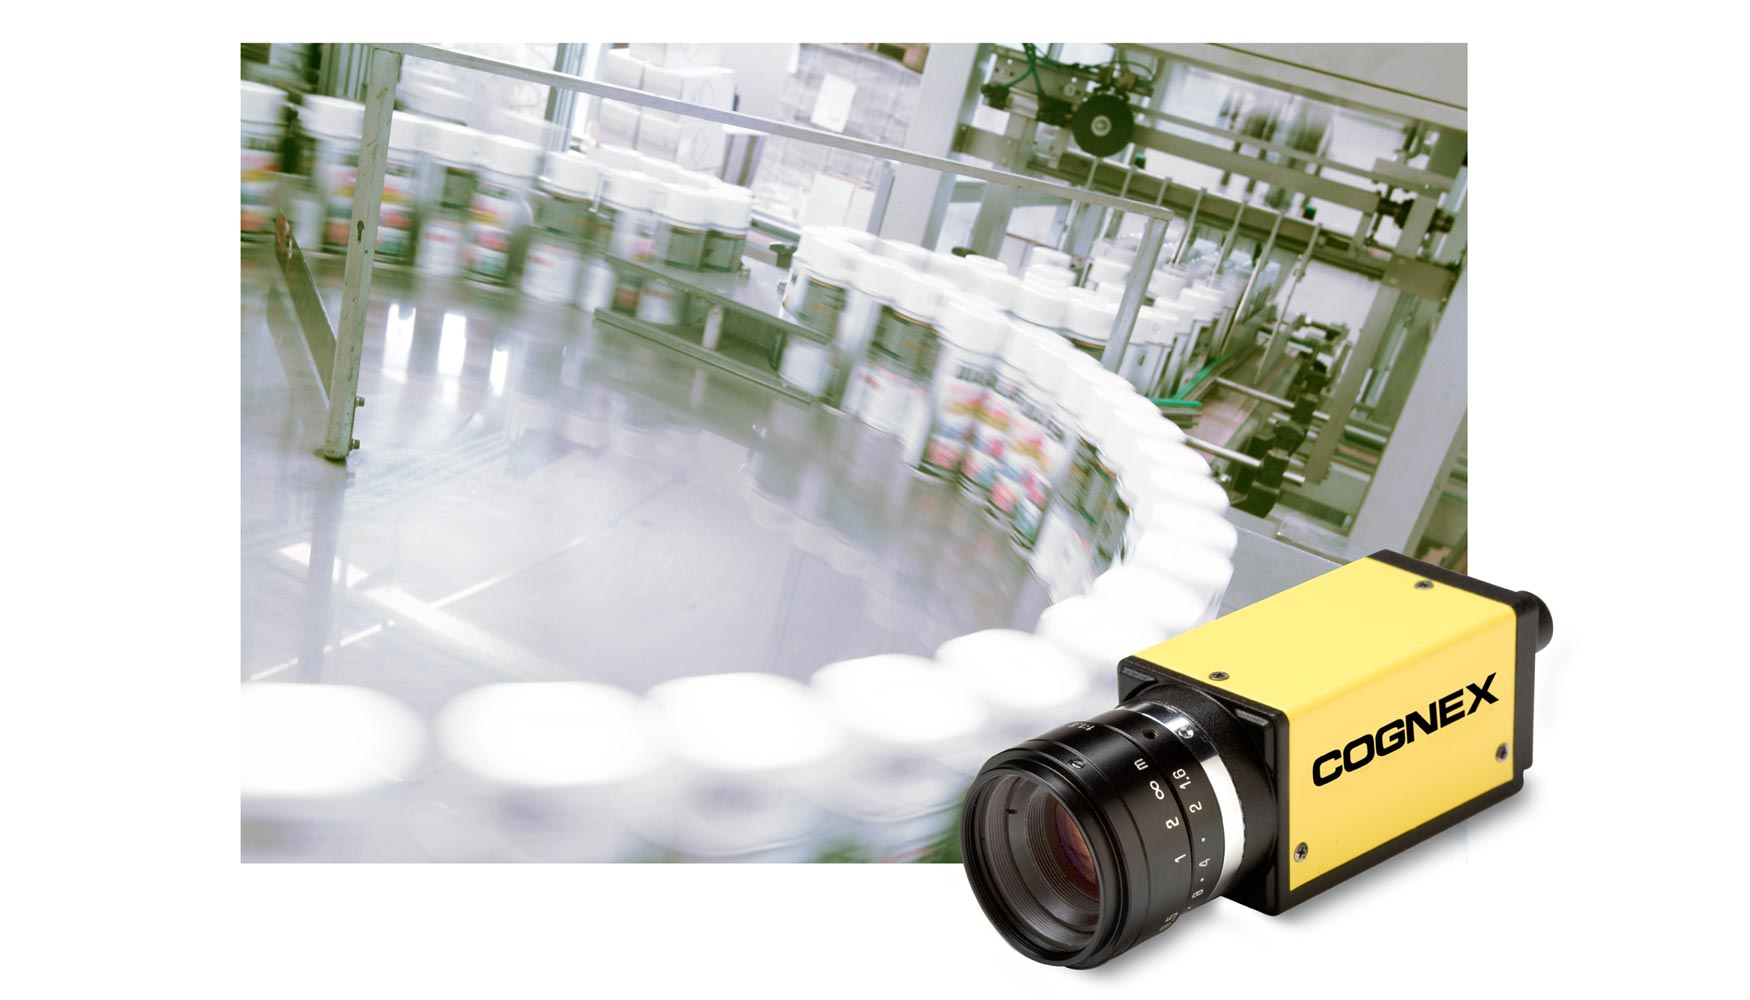 Inspeccin de envases a alta velocidad mediante In-Sight 1500 de Cognex